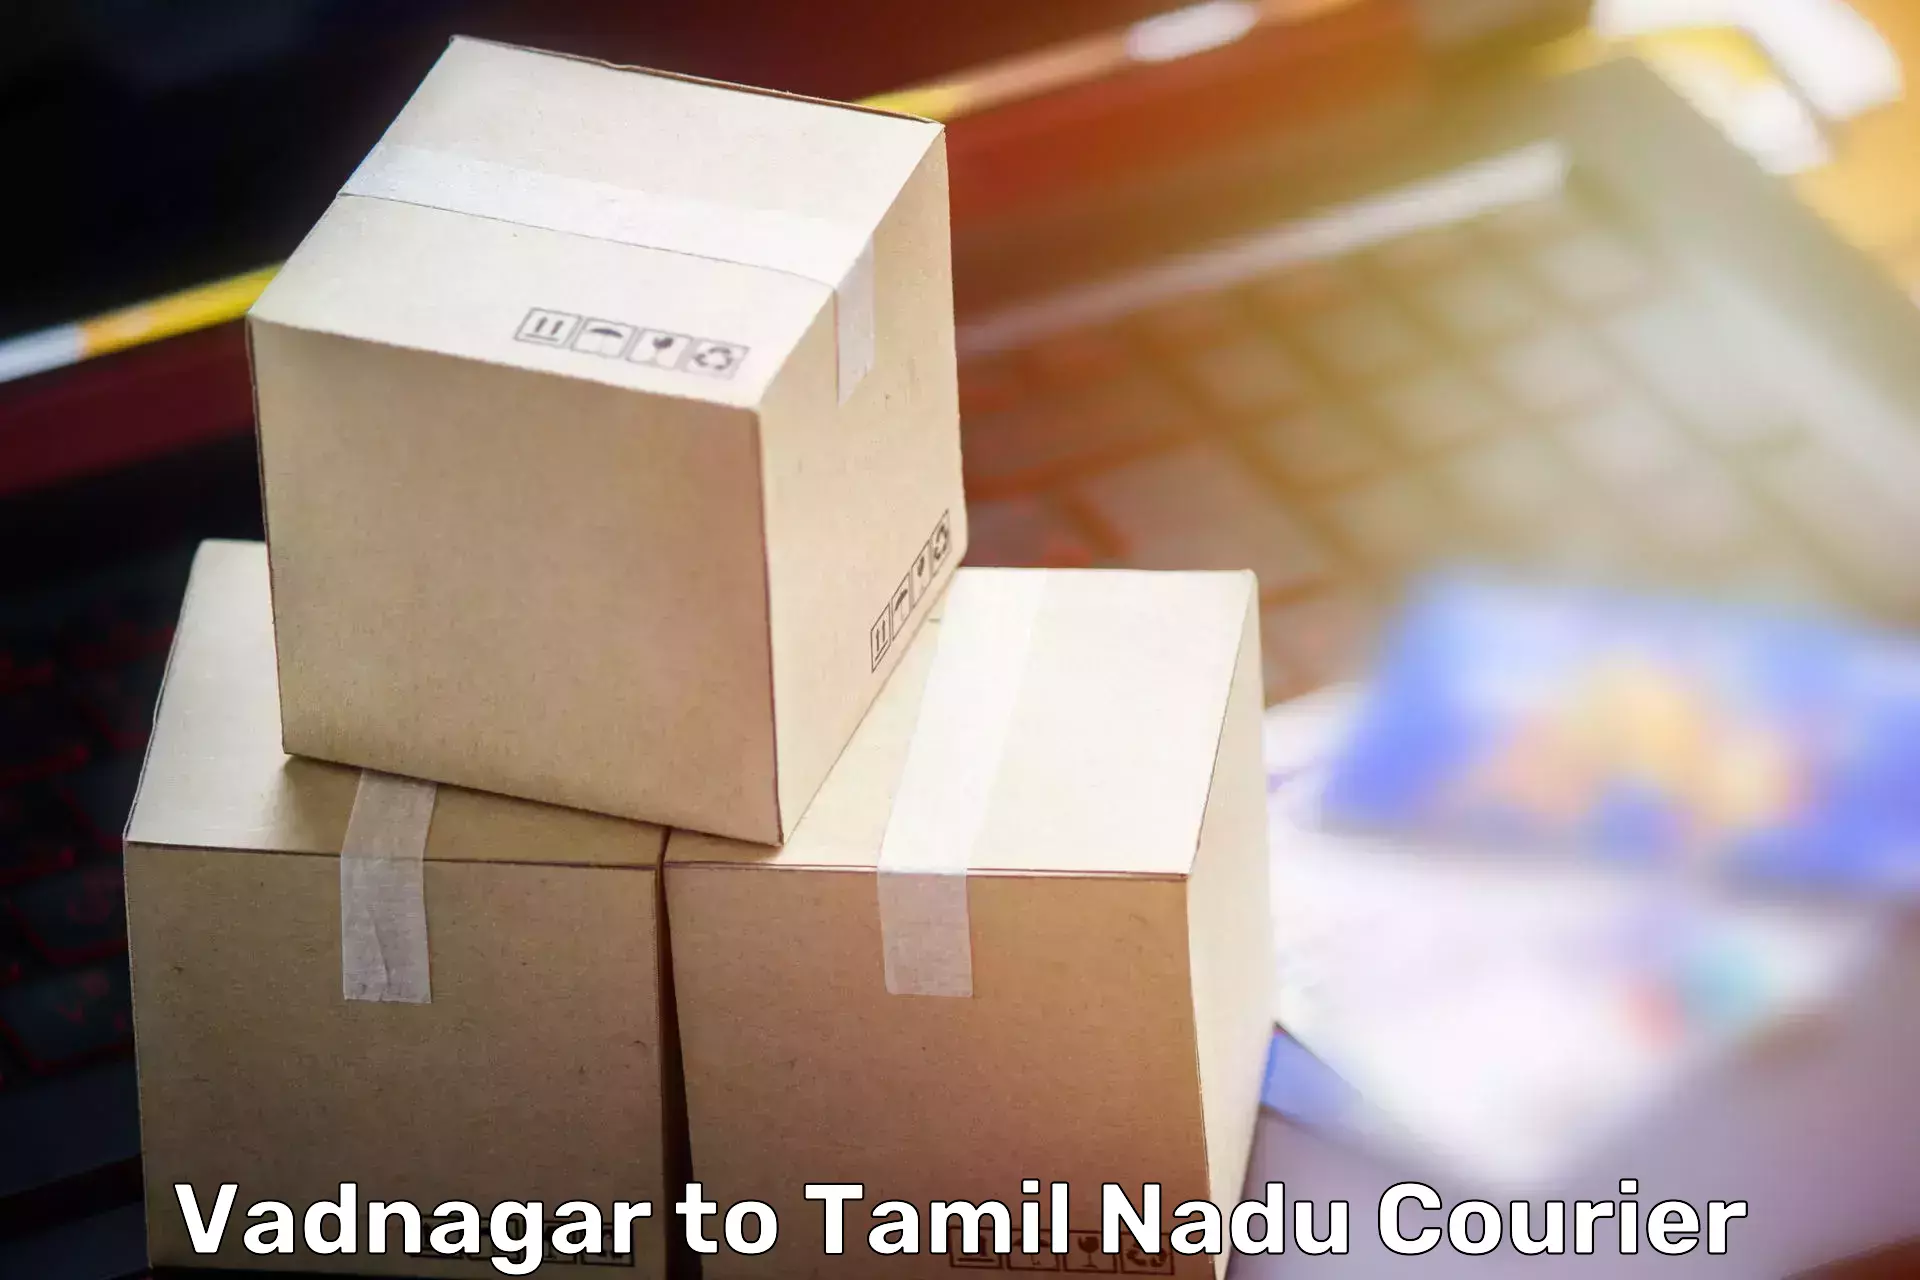 Furniture moving assistance Vadnagar to Tamil Nadu